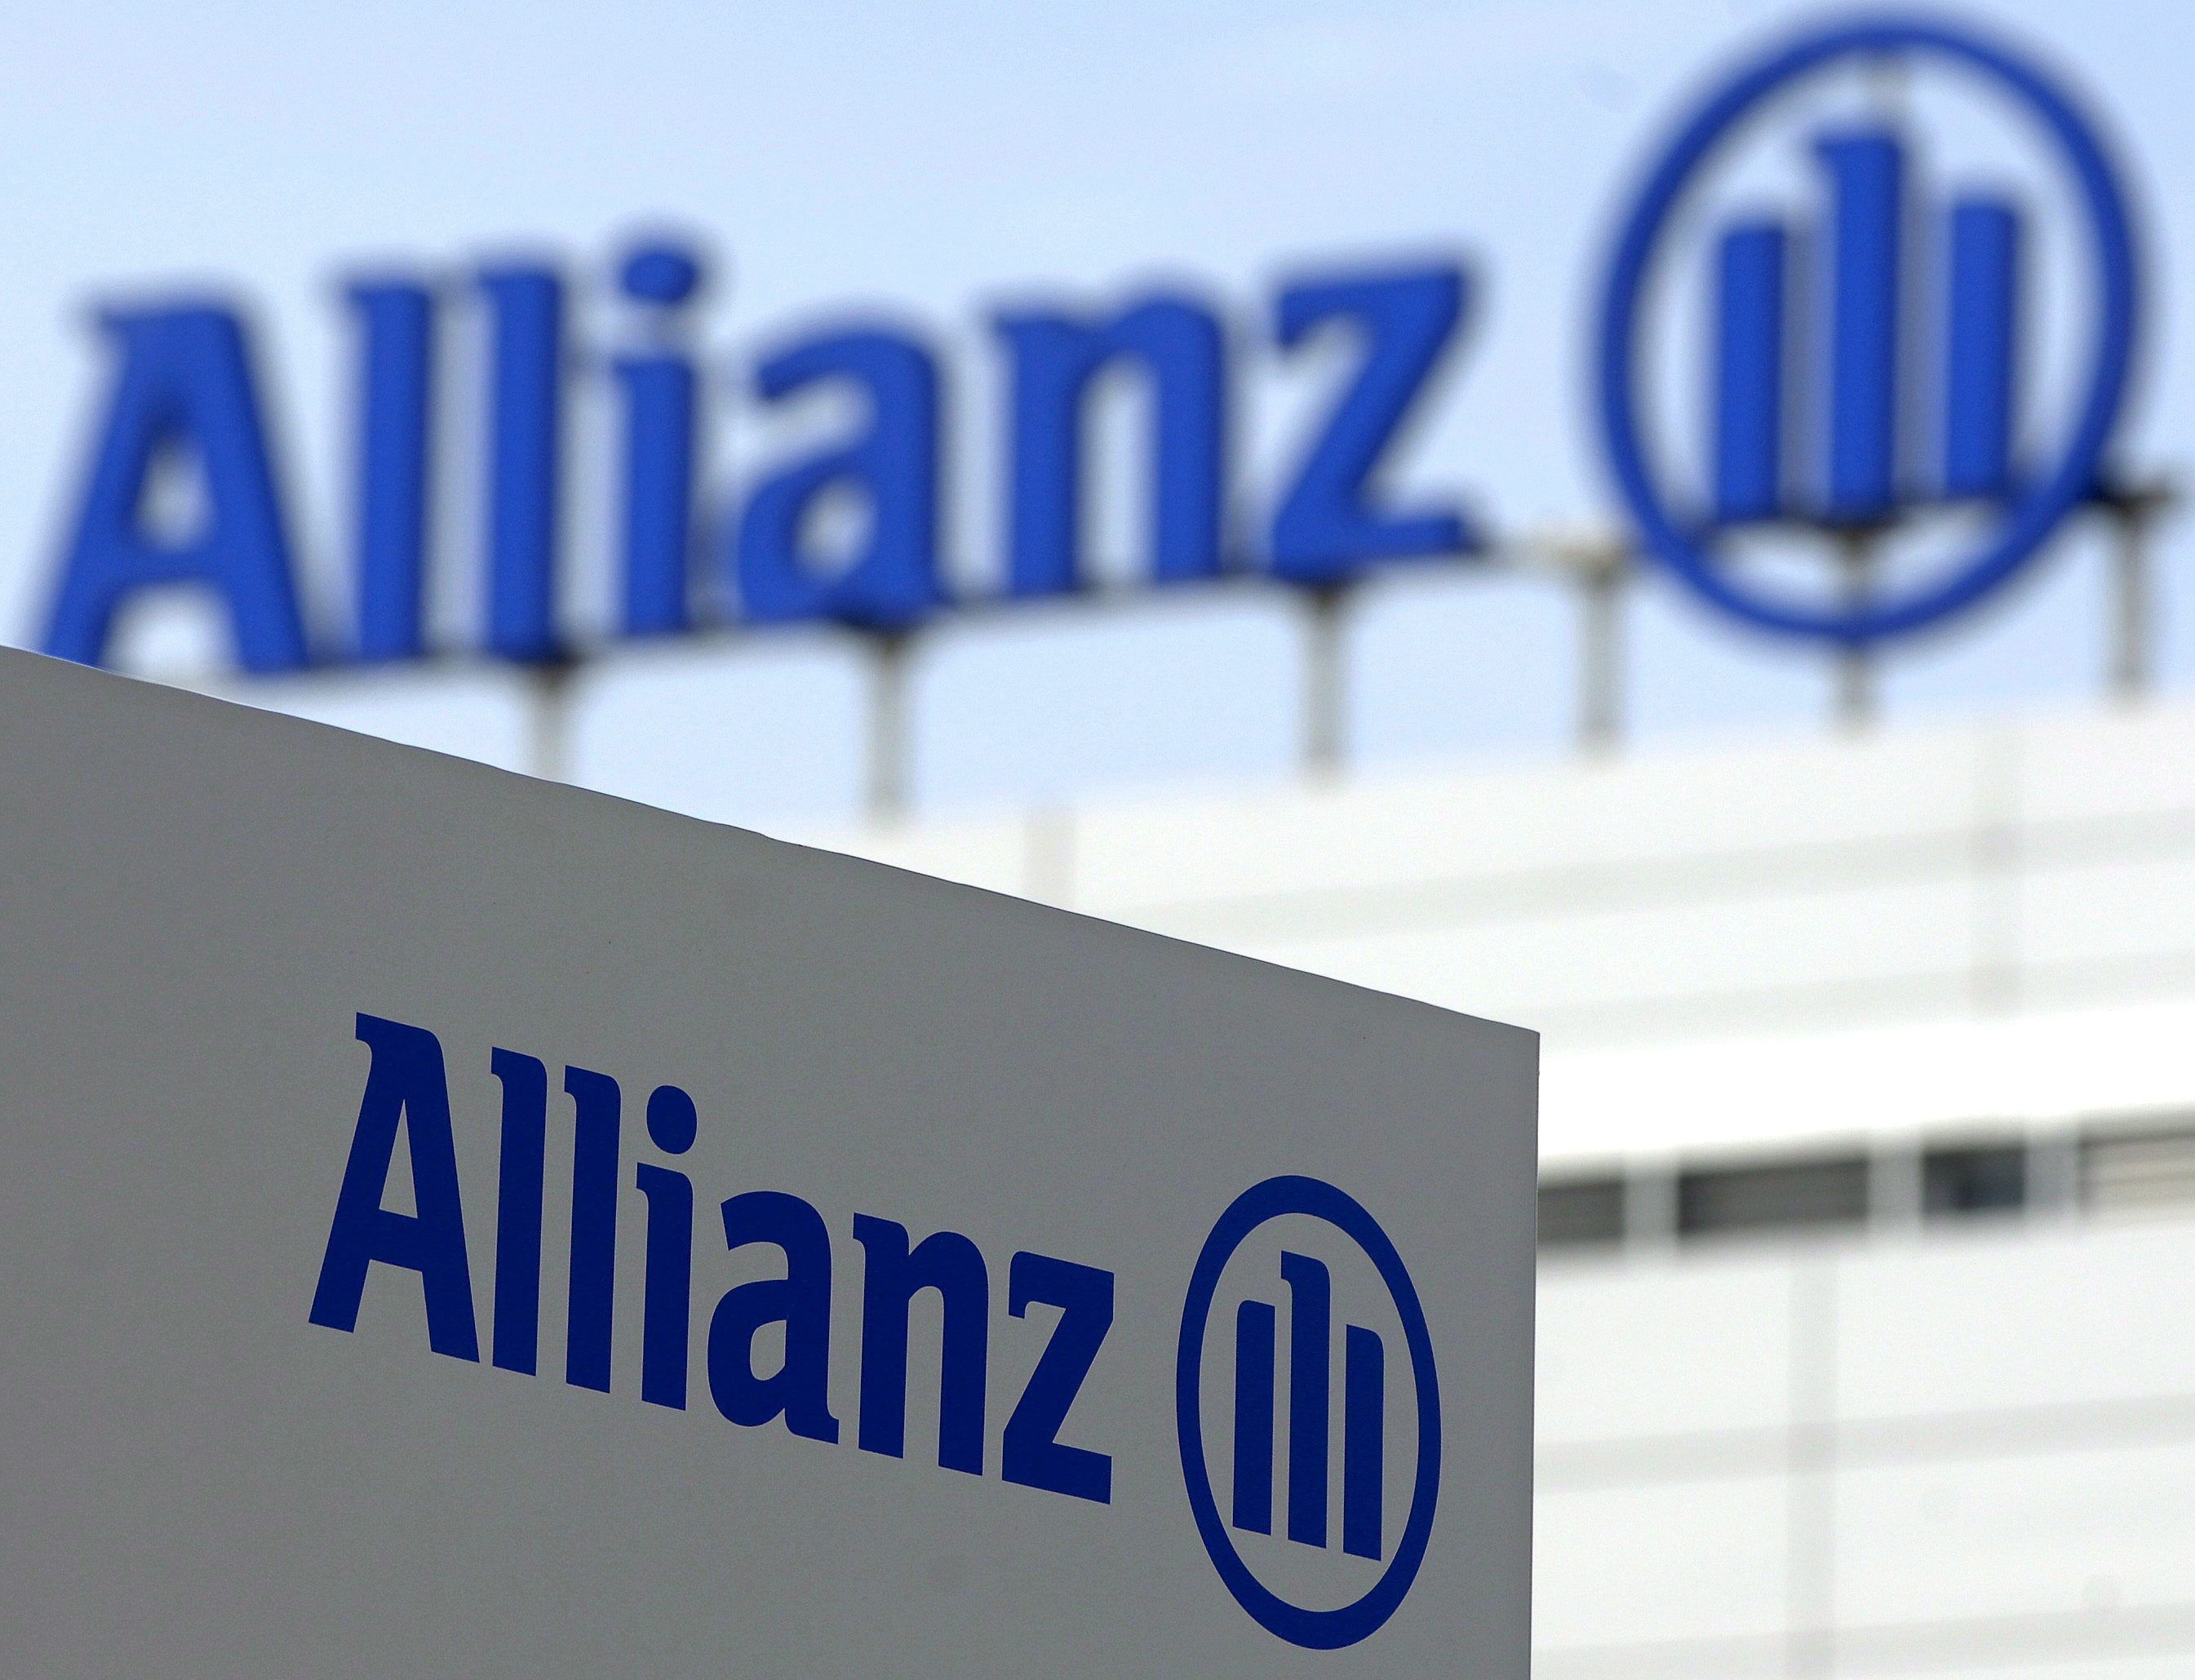 Allianz voit son exposition nette à Harvey limitée à 220 millions d'euros